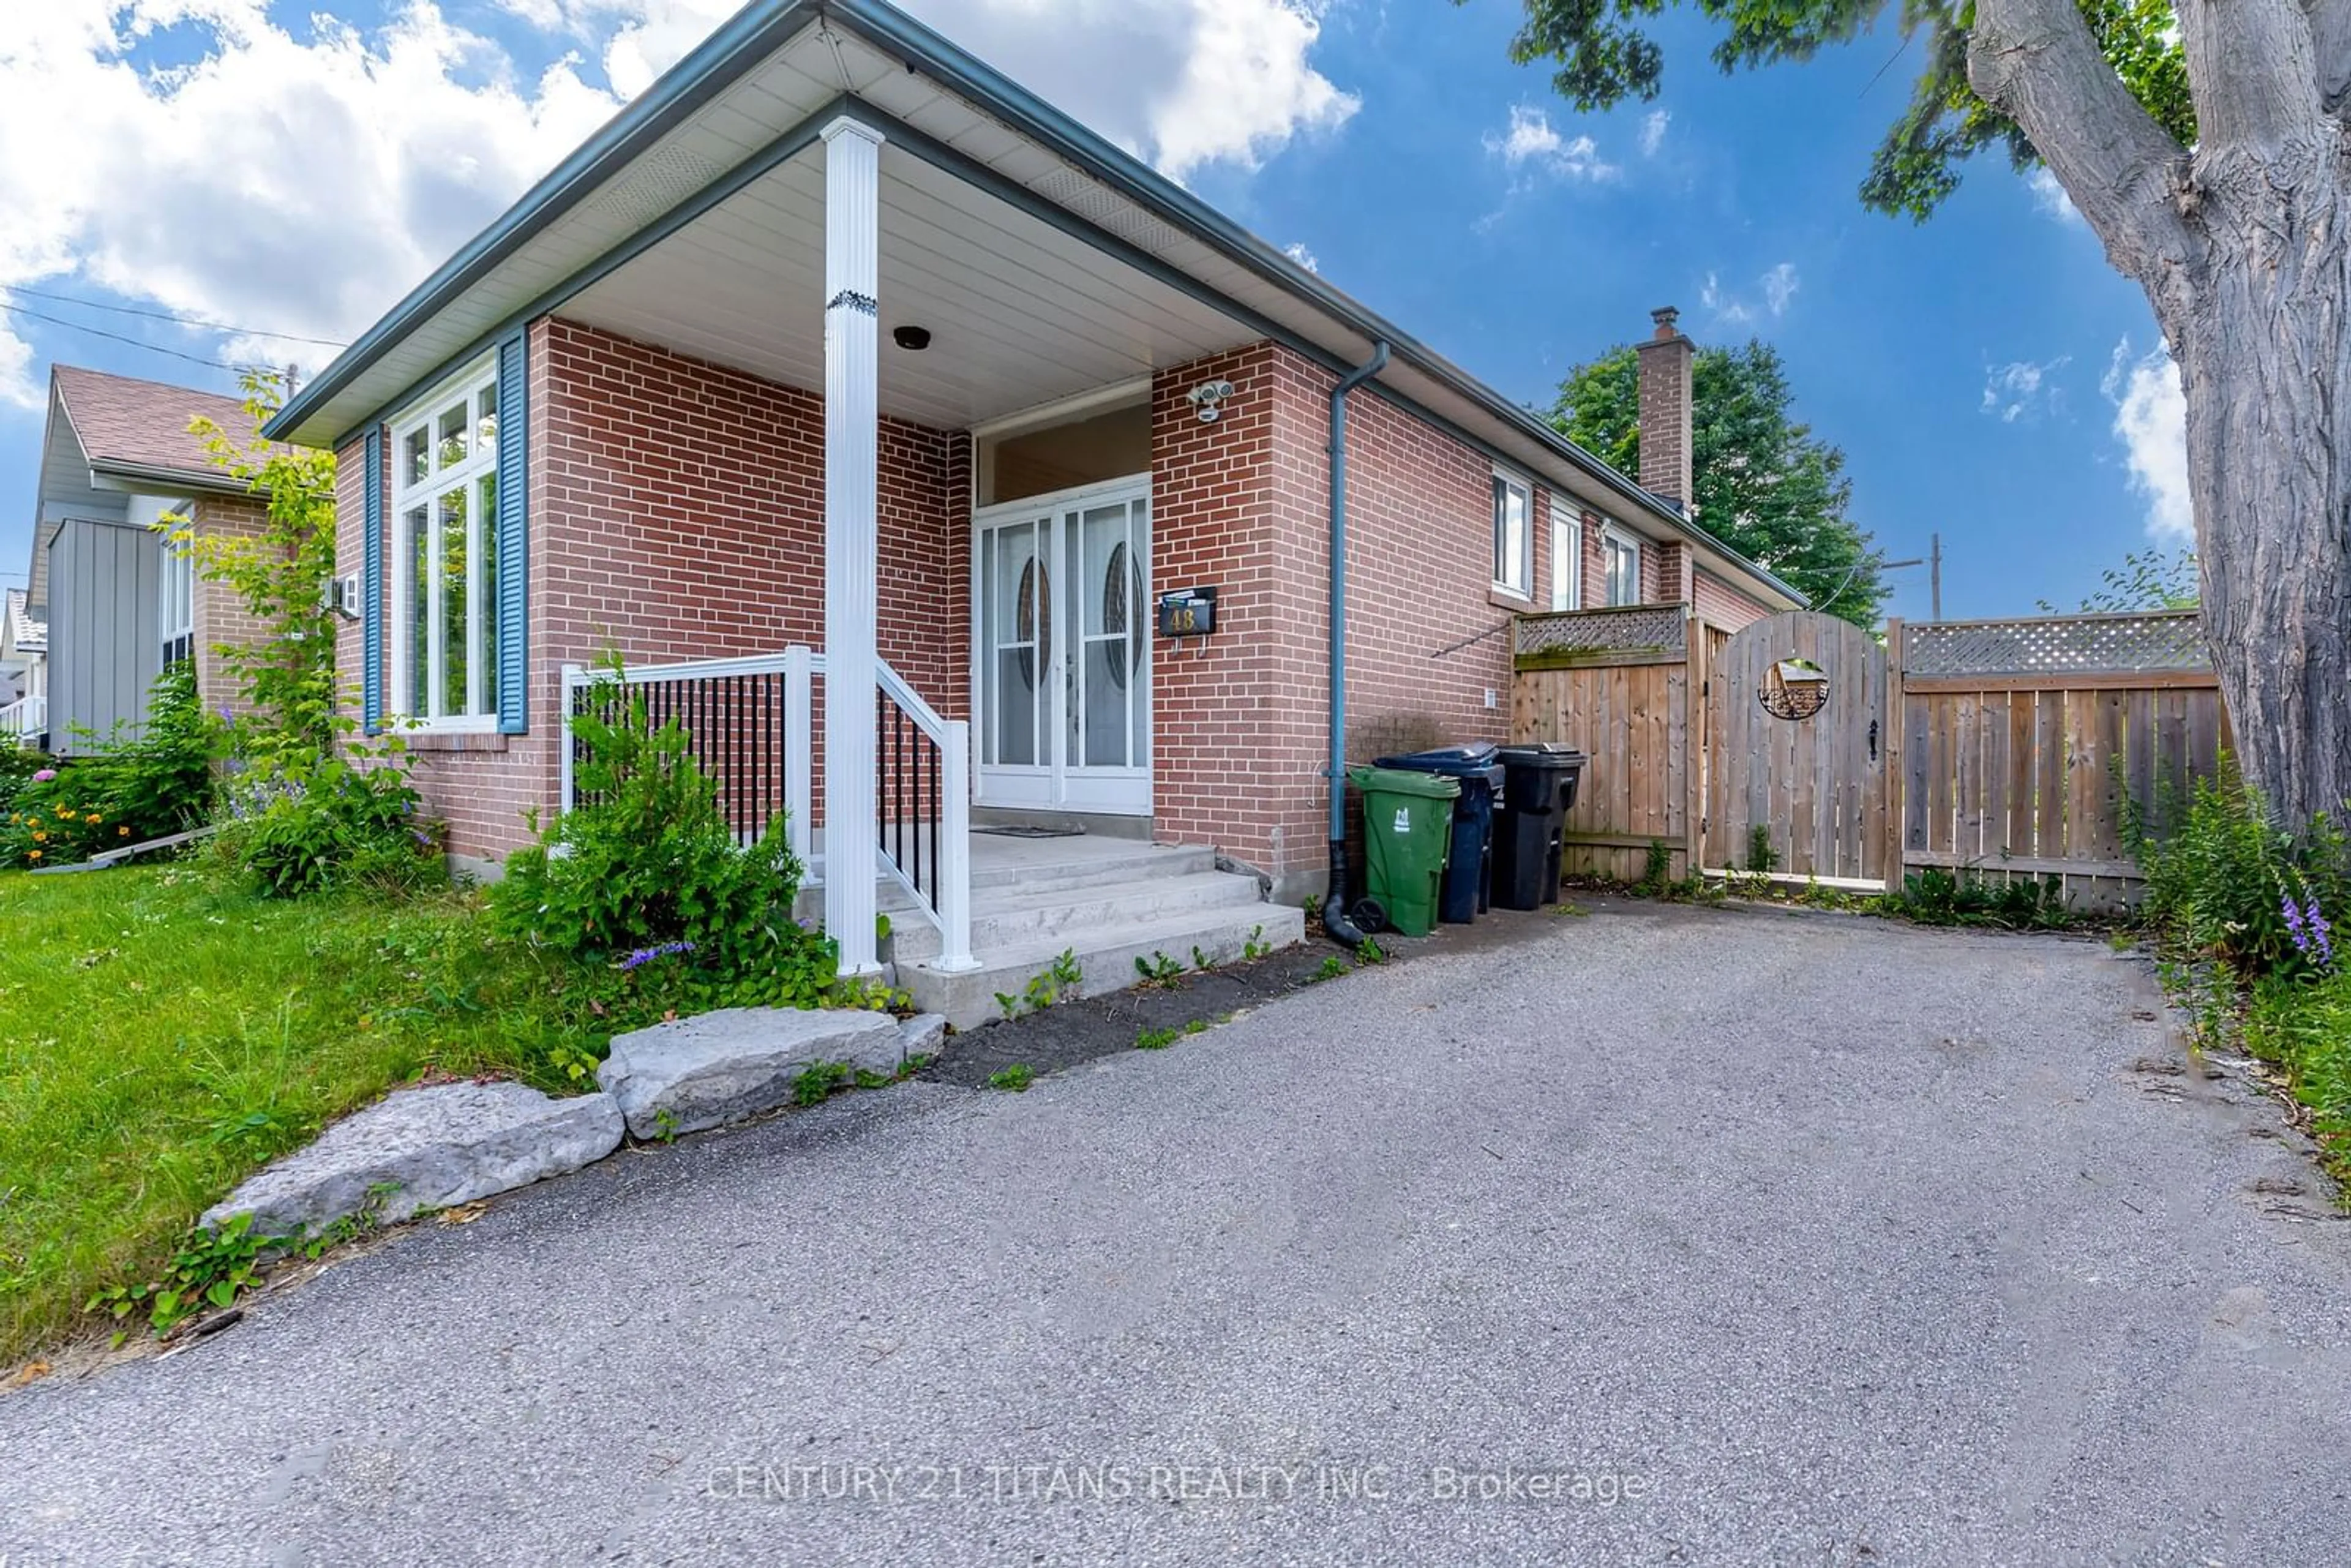 Home with brick exterior material for 48 Rowallan Dr, Toronto Ontario M1E 2Y6